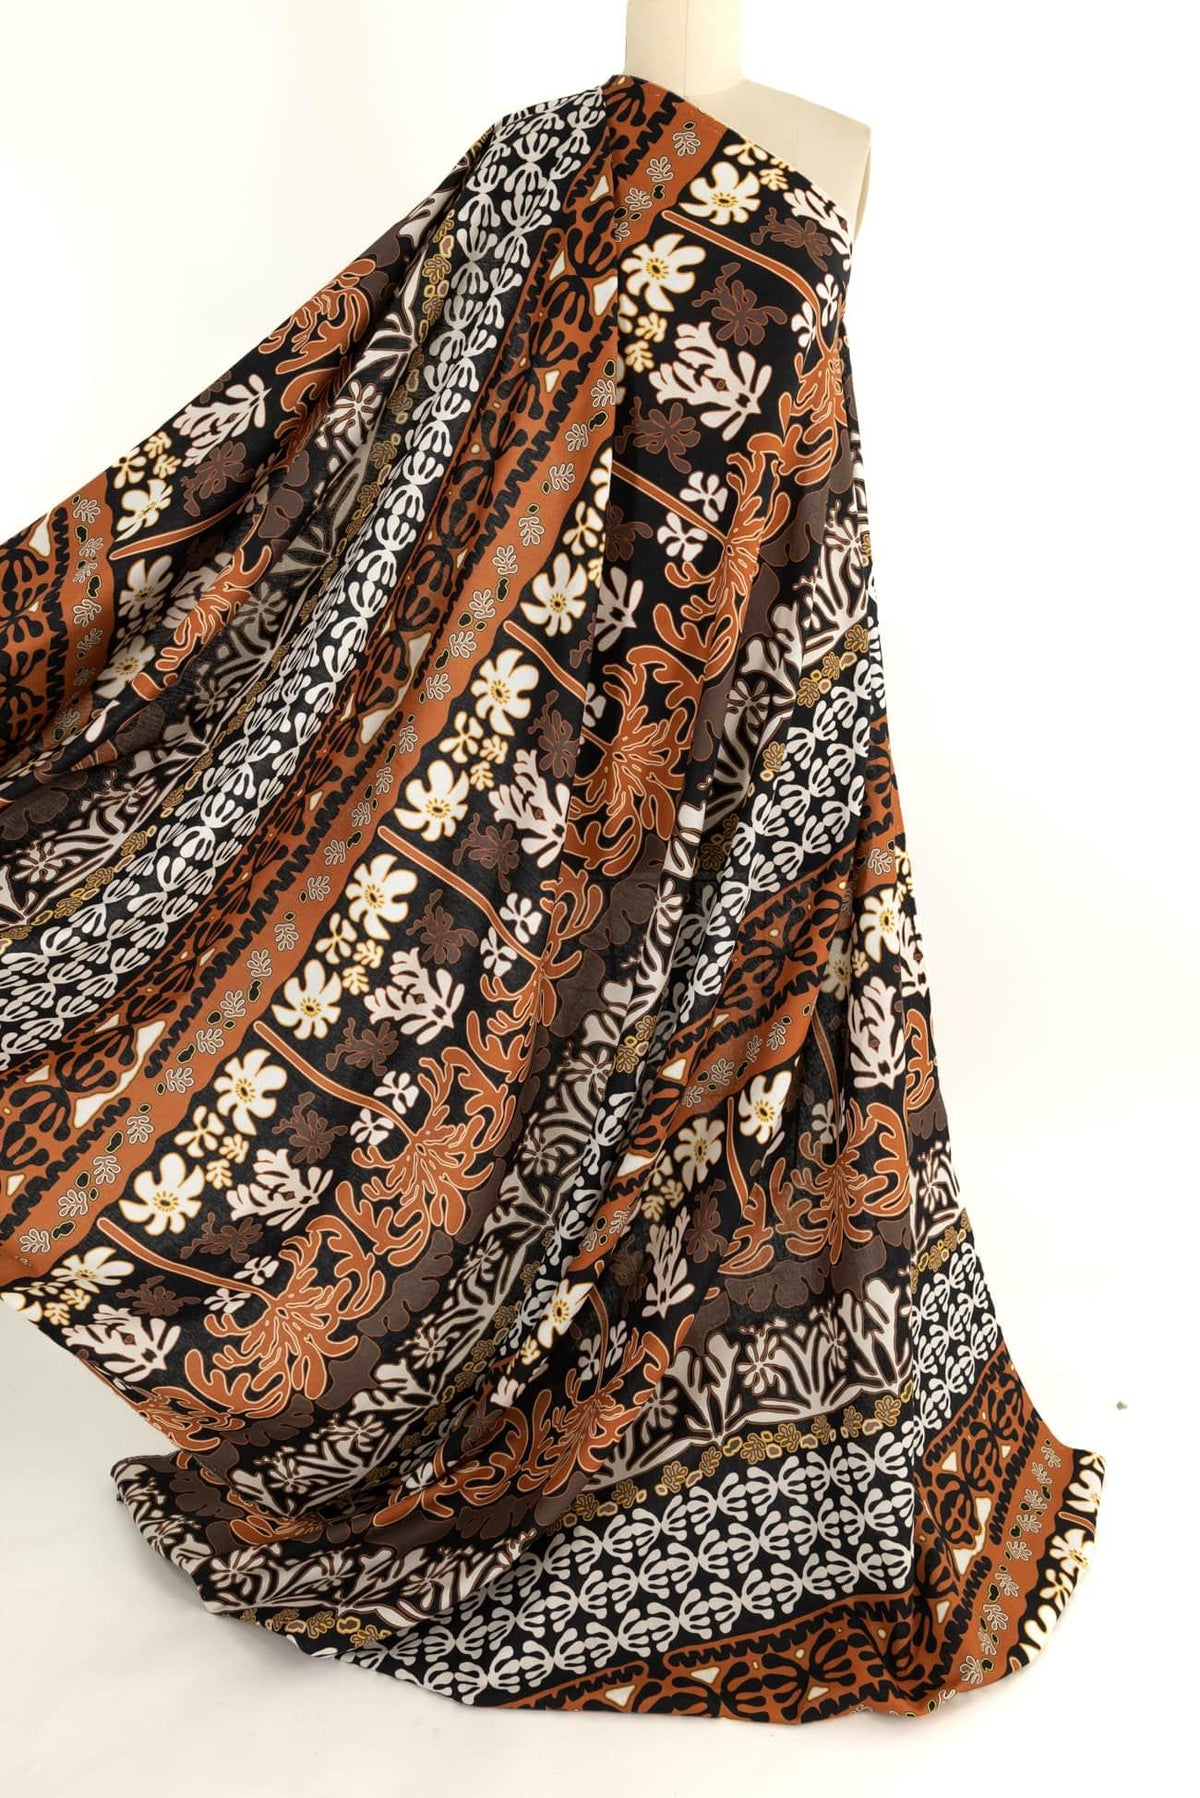 Umbria Italian Linen Woven - Marcy Tilton Fabrics